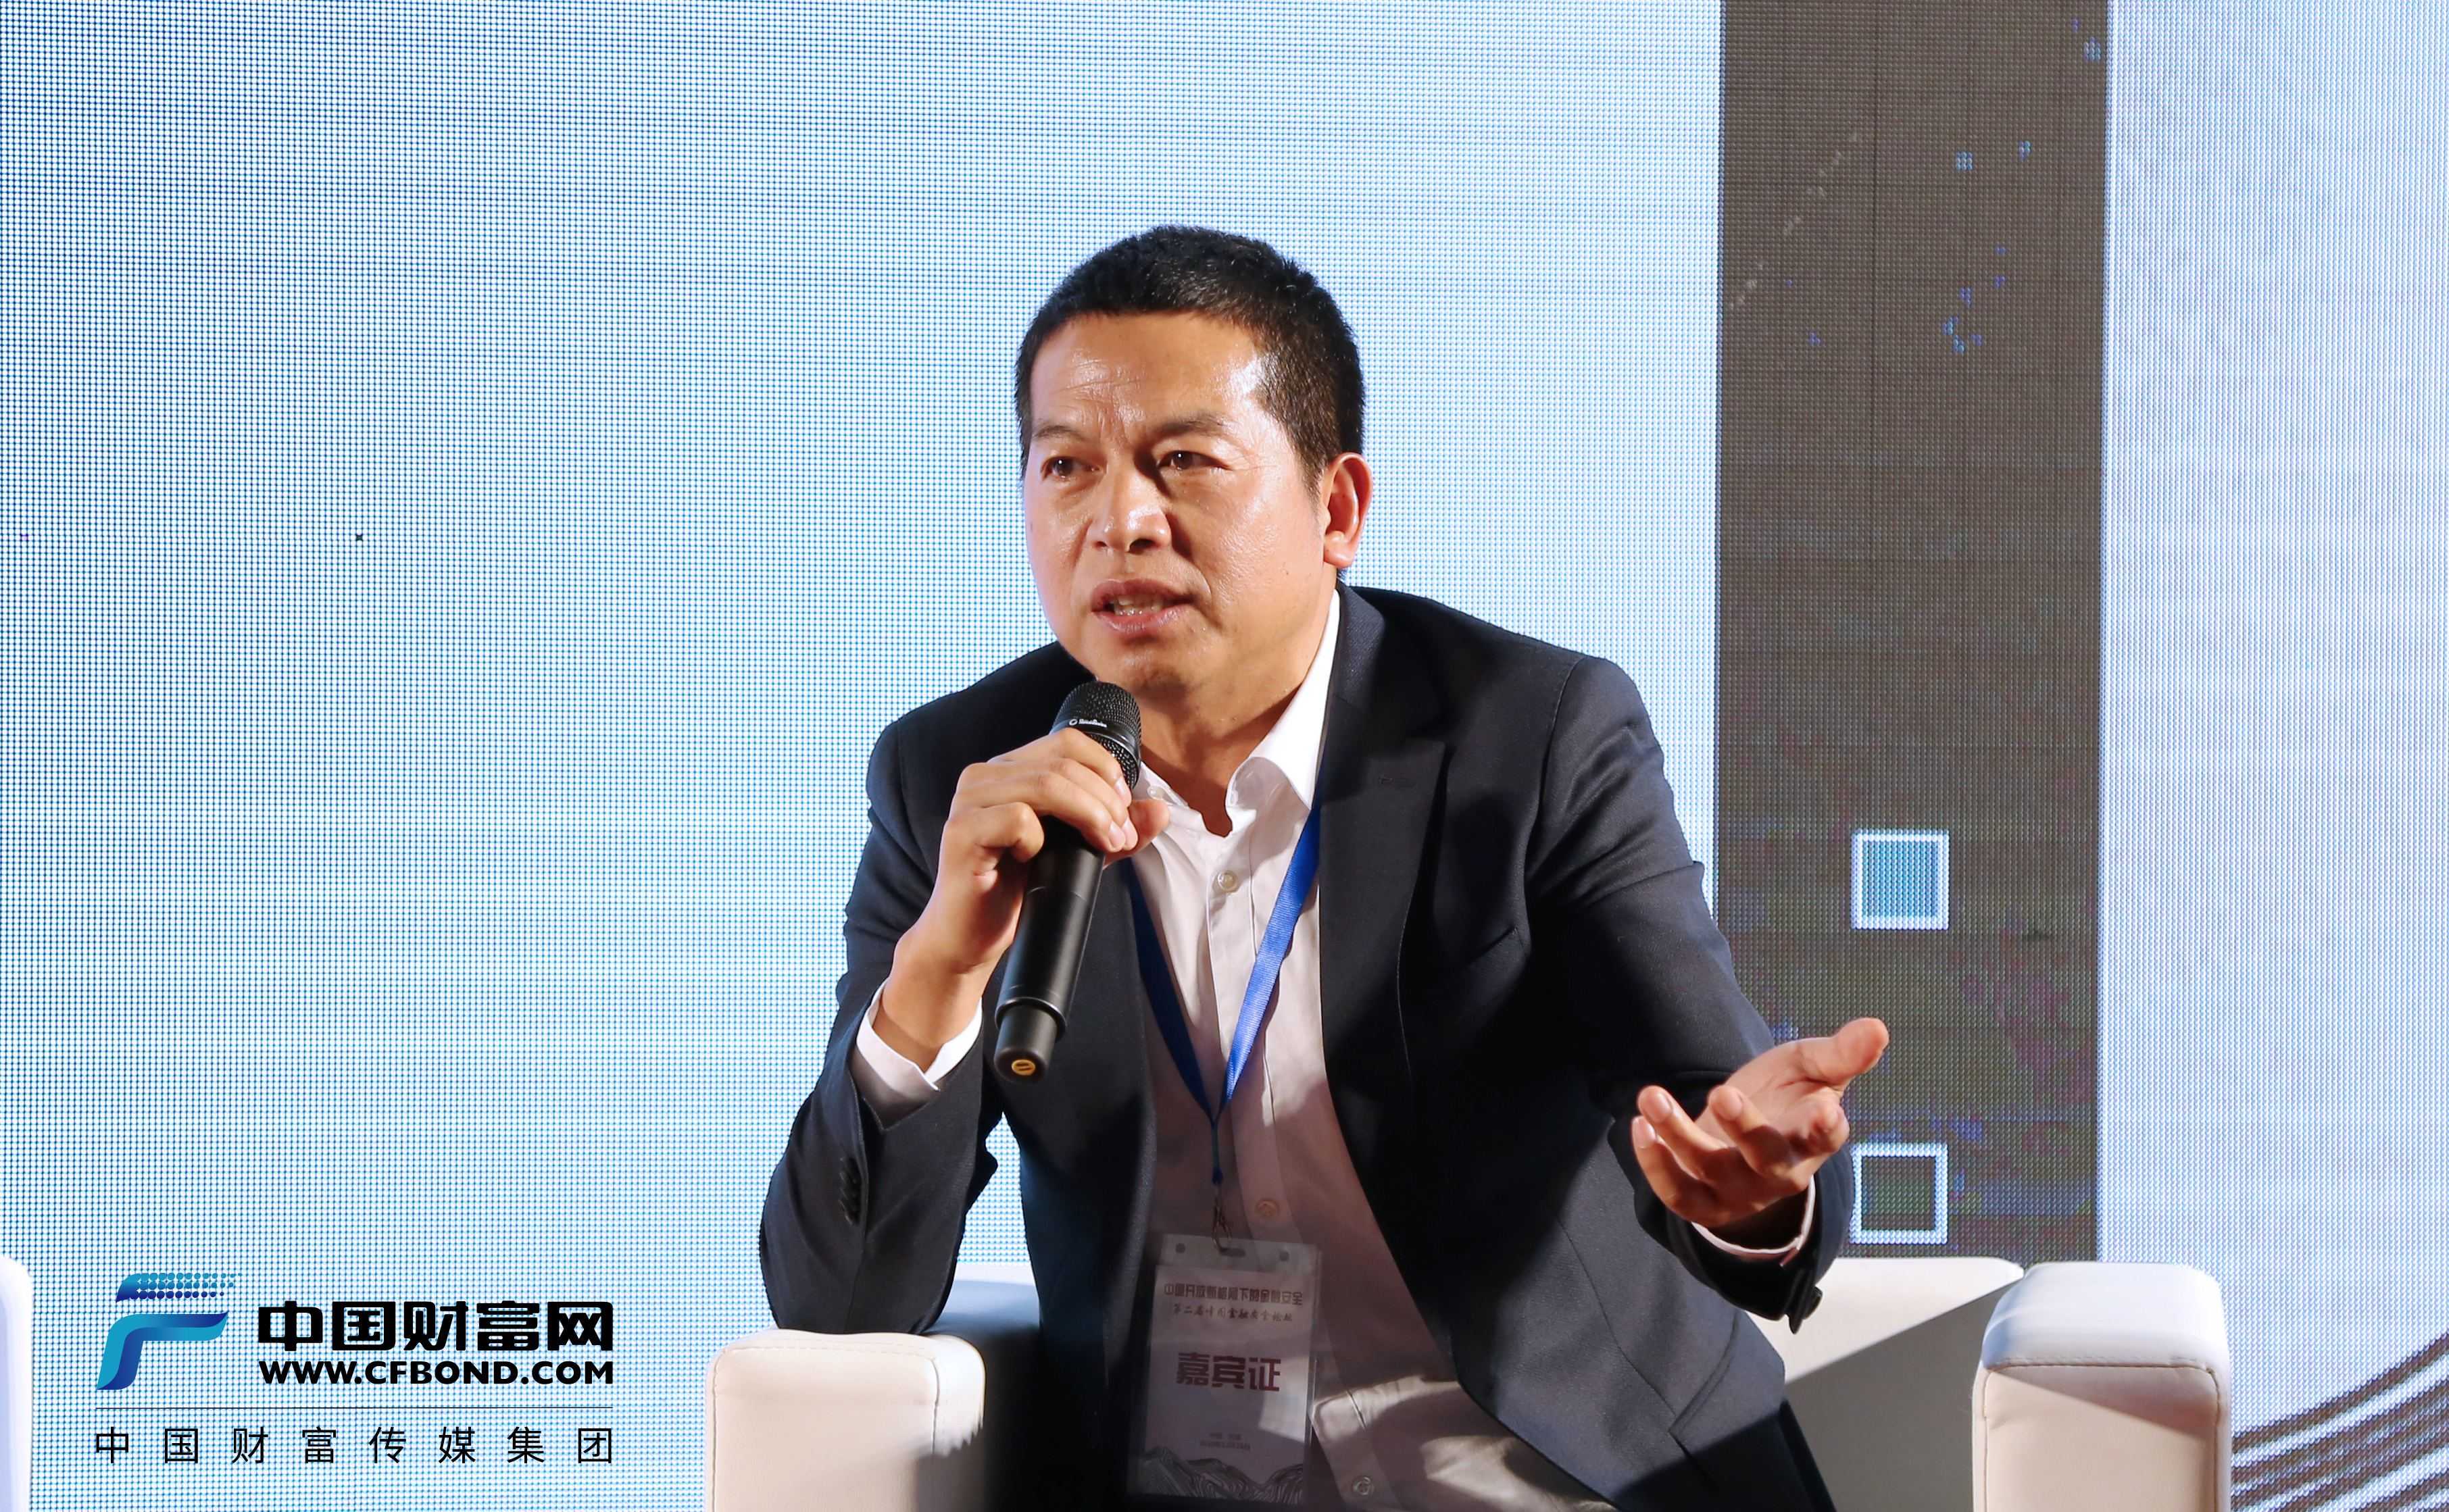 智度集团投委会主席、国光电器董事长陆宏达发言